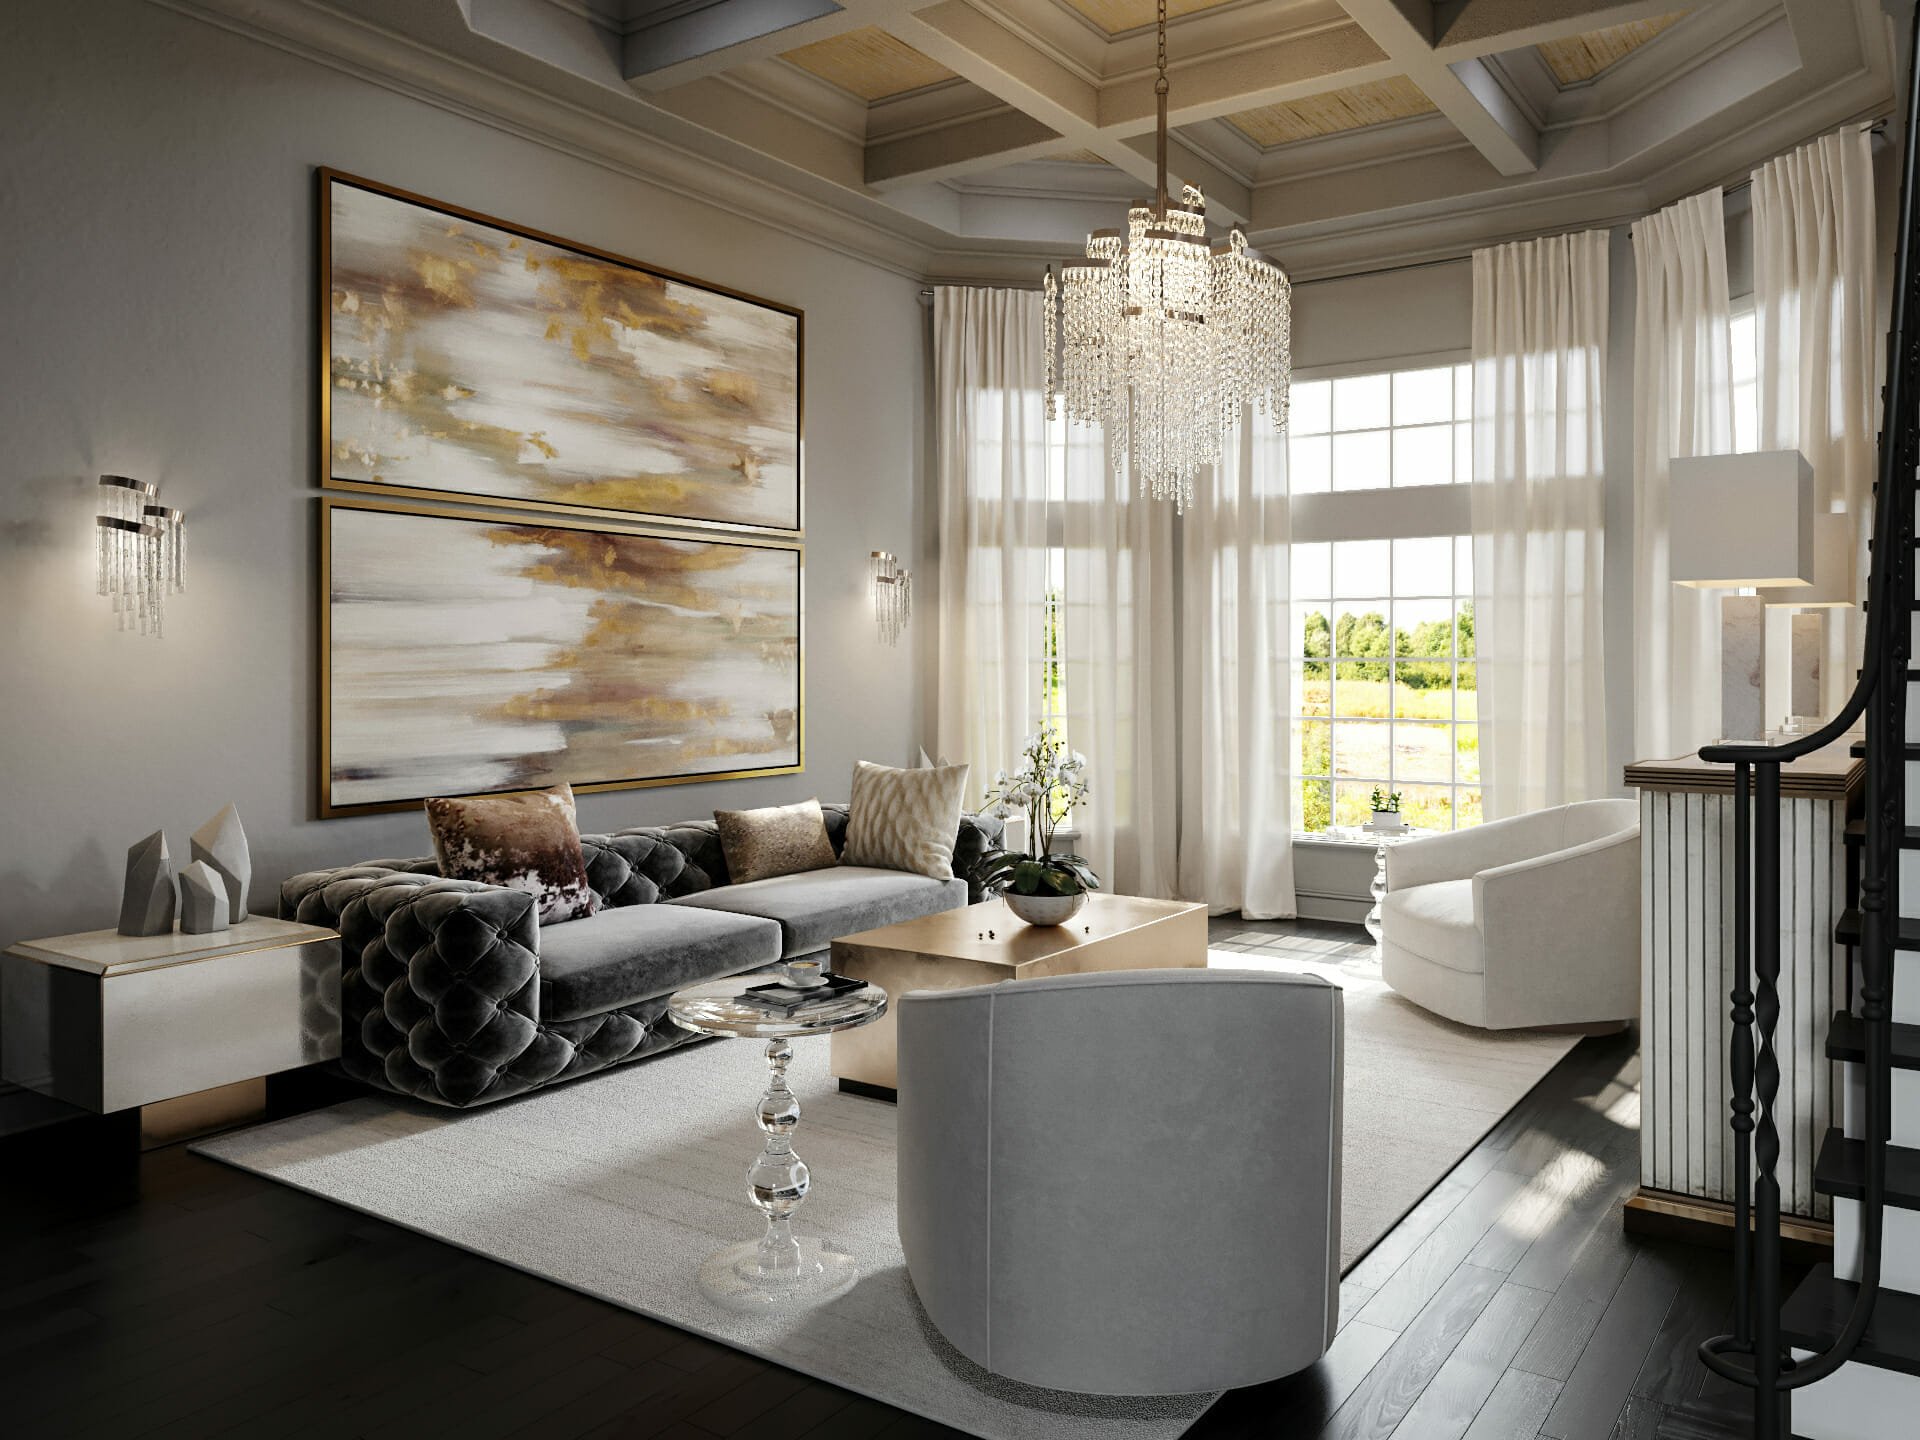 10 Best Luxury Home Interior Design Ideas